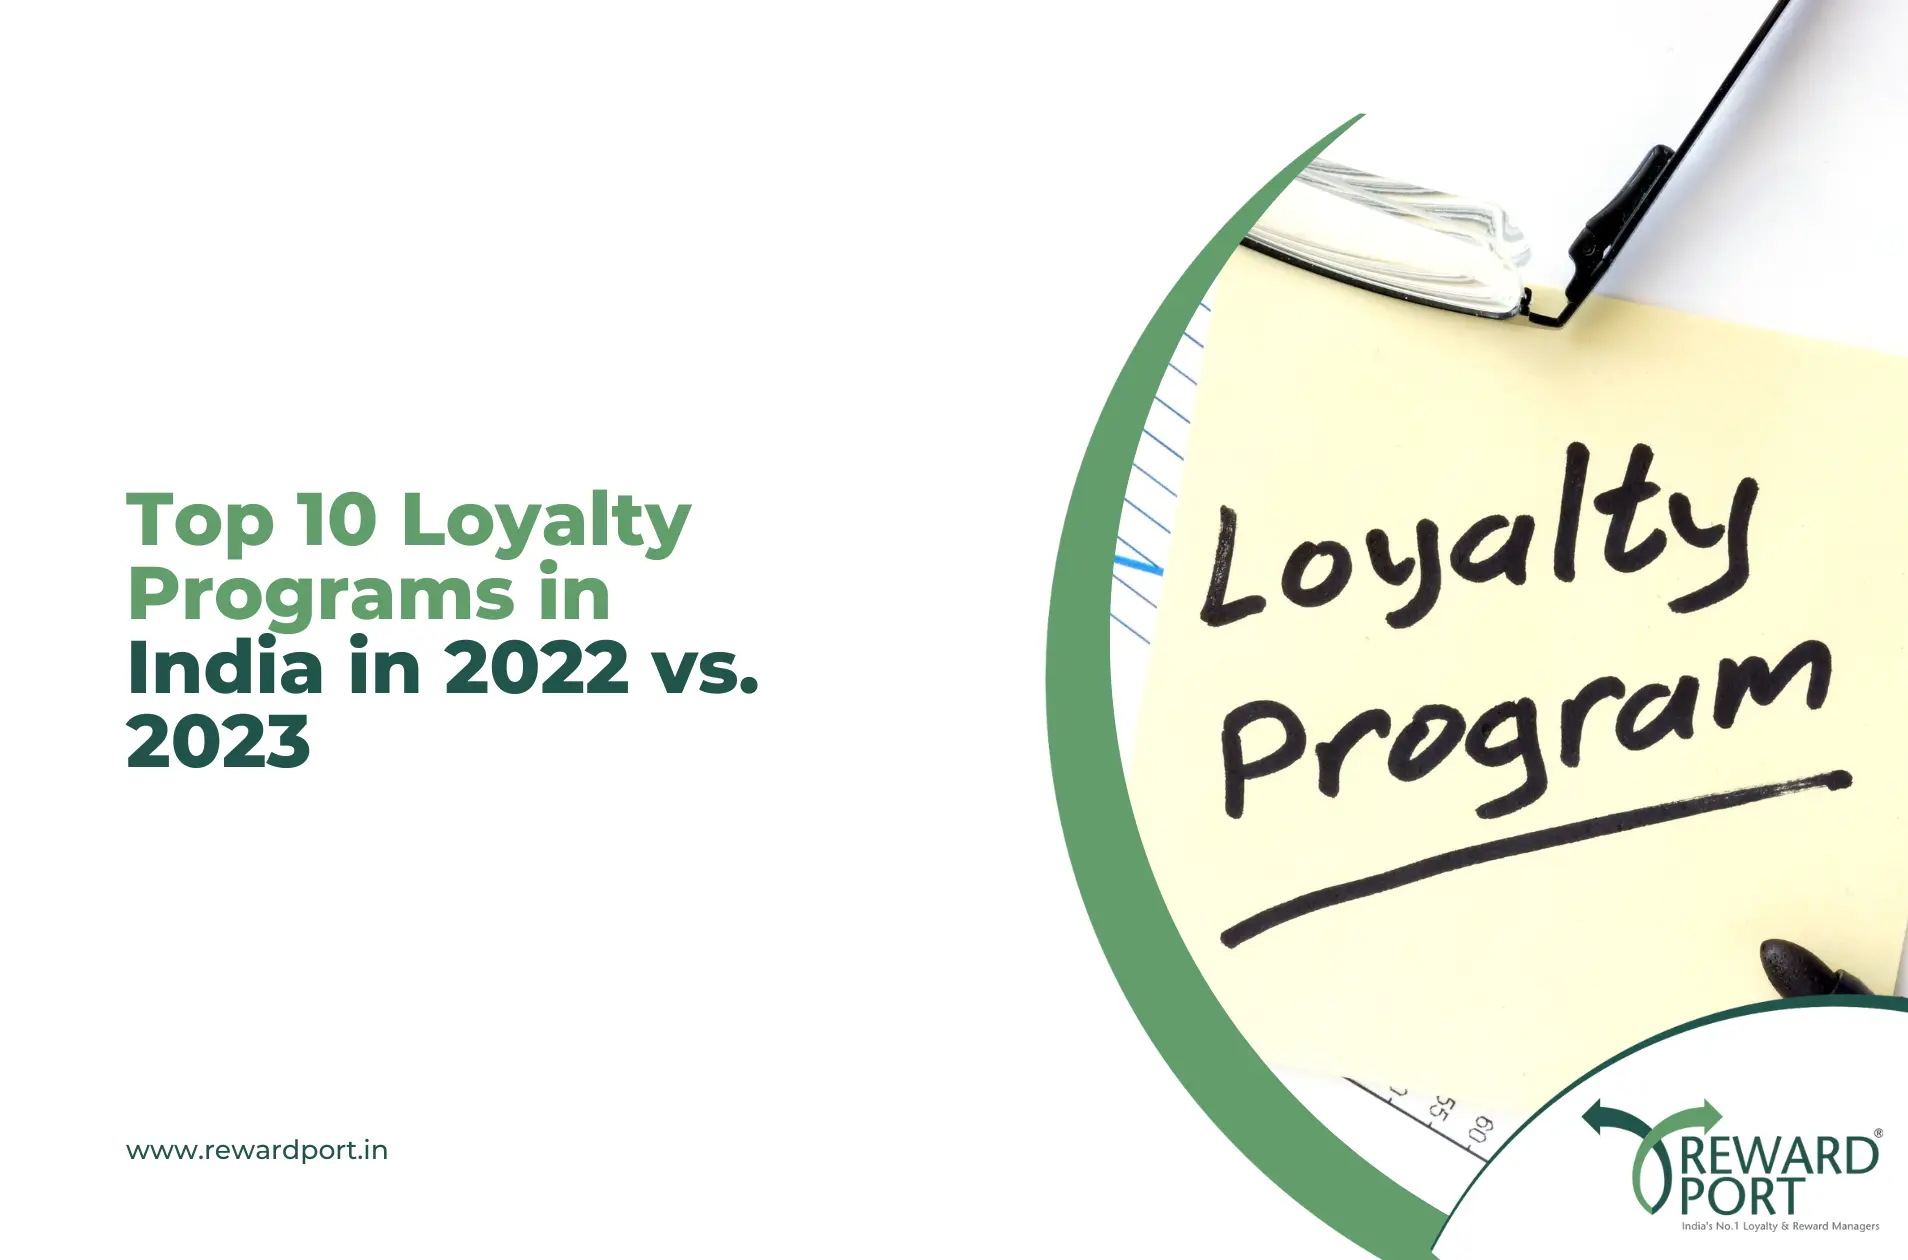 Top 10 Loyalty Programs in India in 2022 vs. 2023